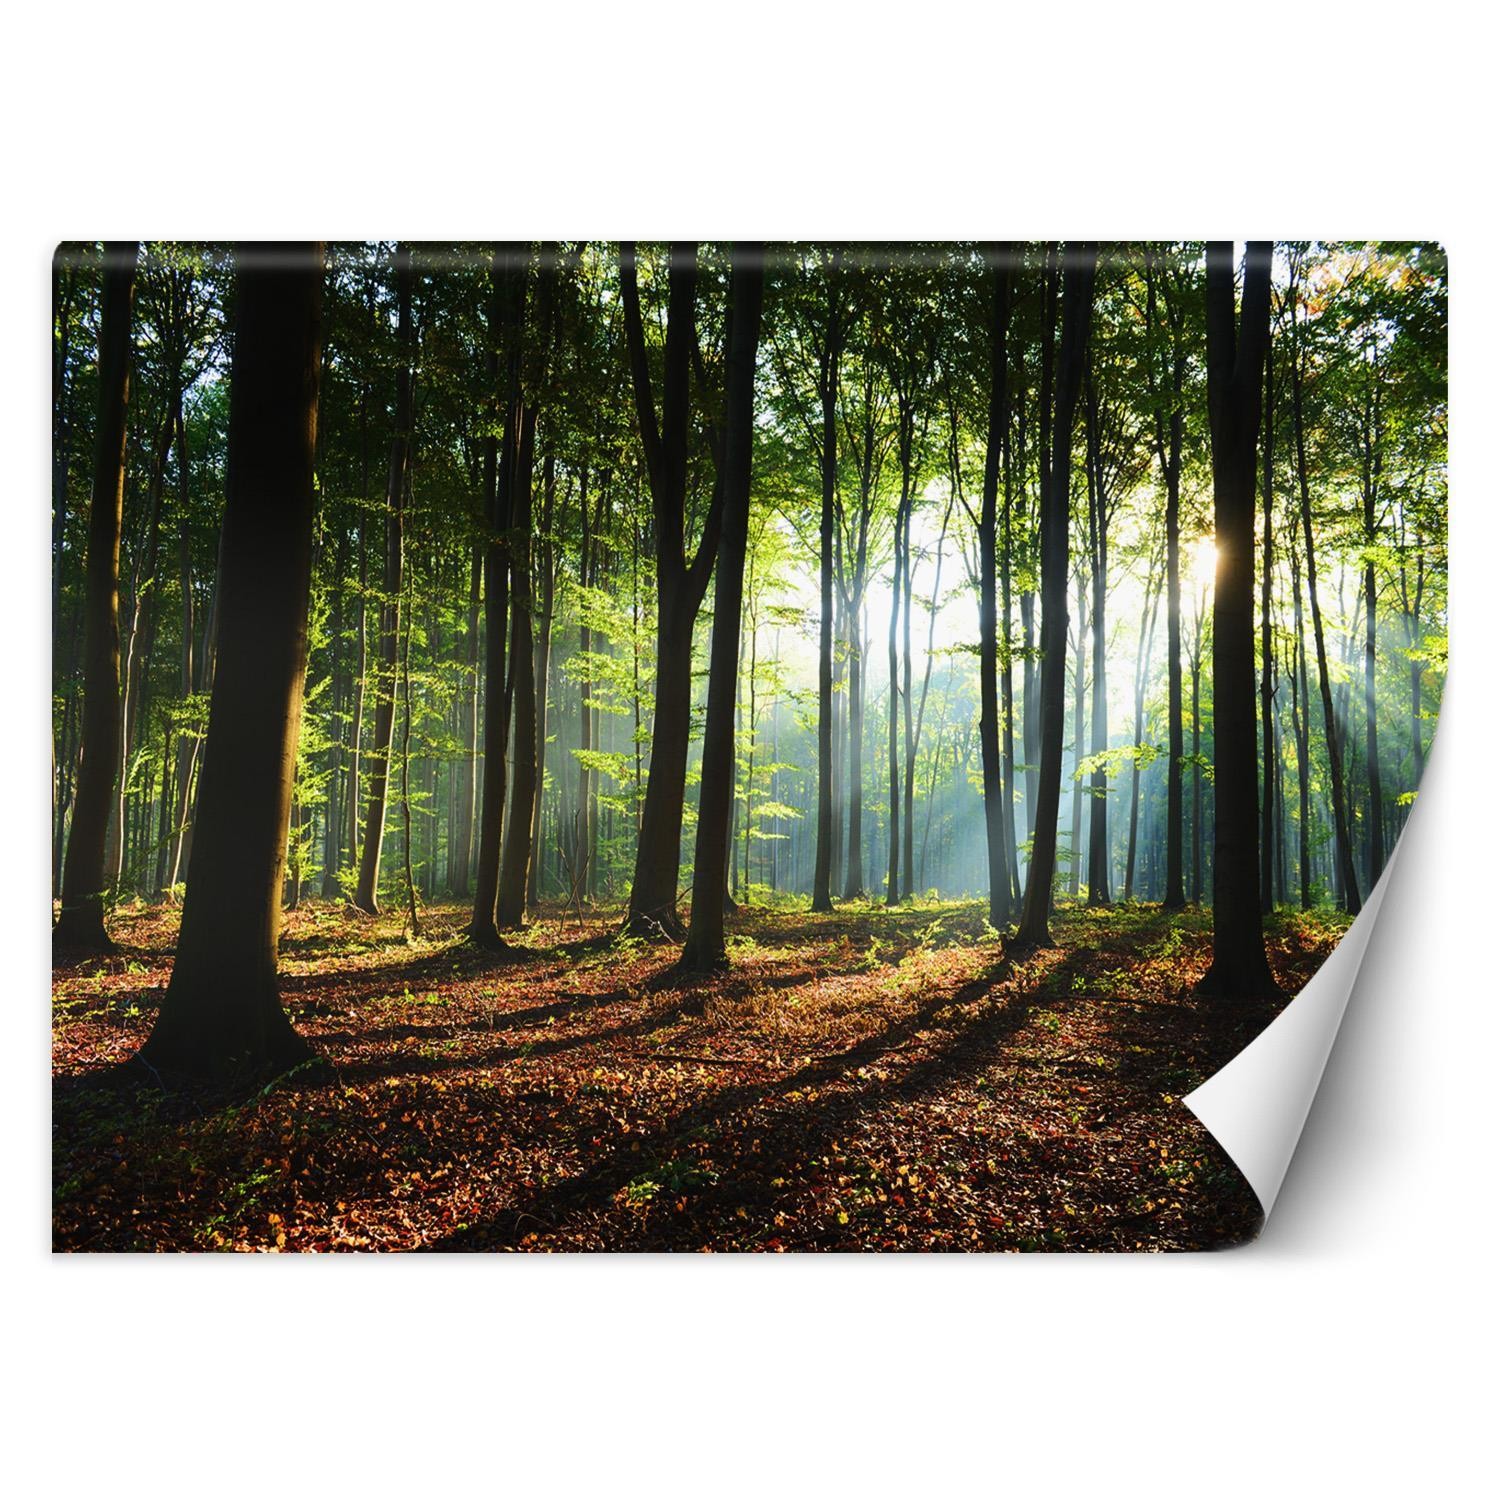 Trend24 – Behang – Ochtend In Het Bos – Behangpapier – Fotobehang Natuur – Behang Woonkamer – 450x315x2 cm – Incl. behanglijm